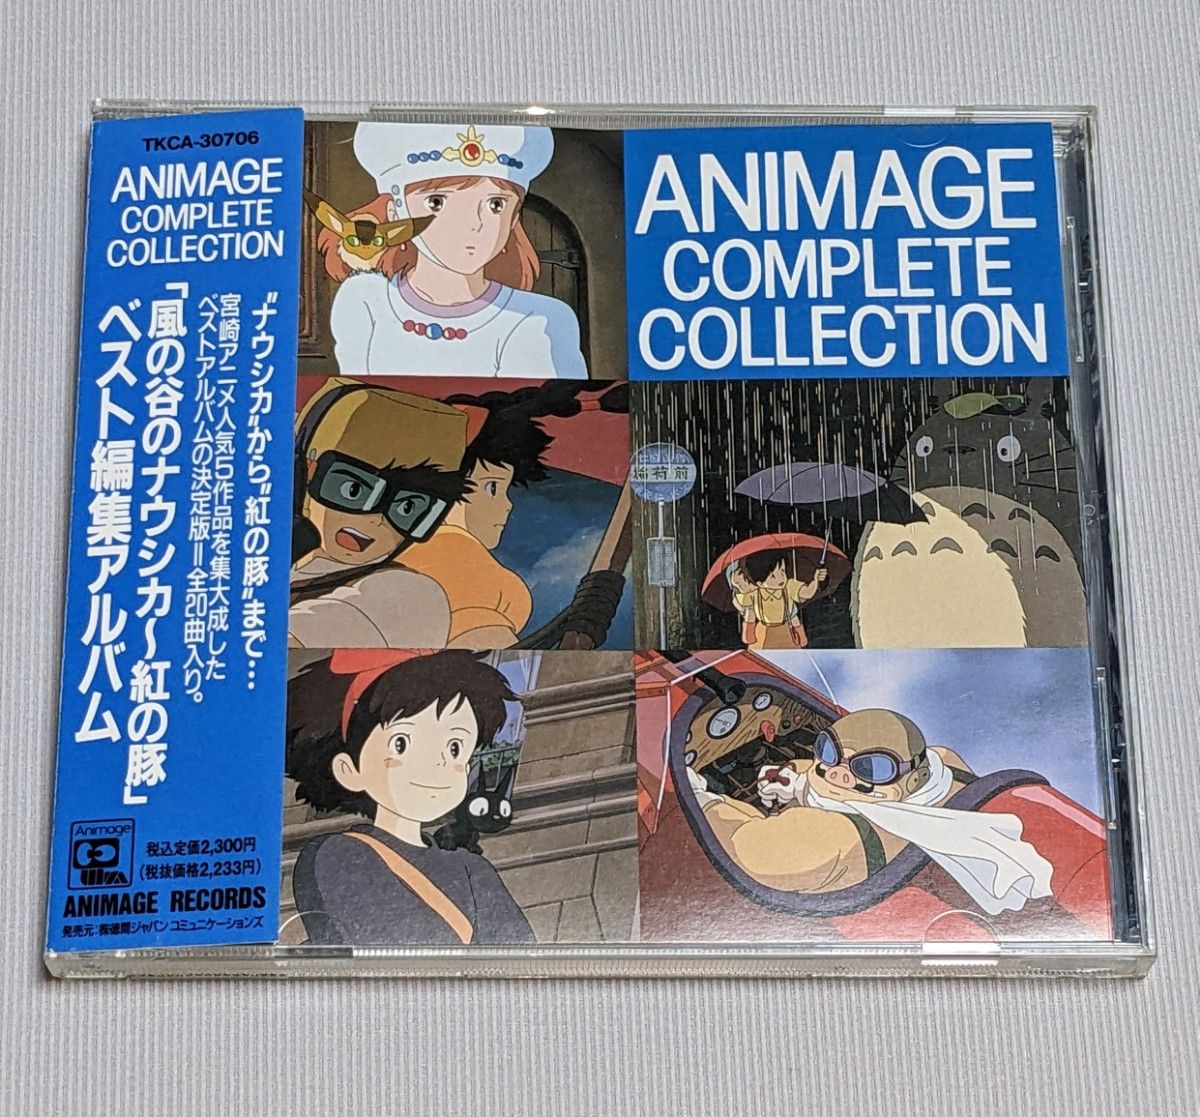 アニメージュ コンプリート コレクション 風の谷ナウシカ 紅の豚 CD 帯付